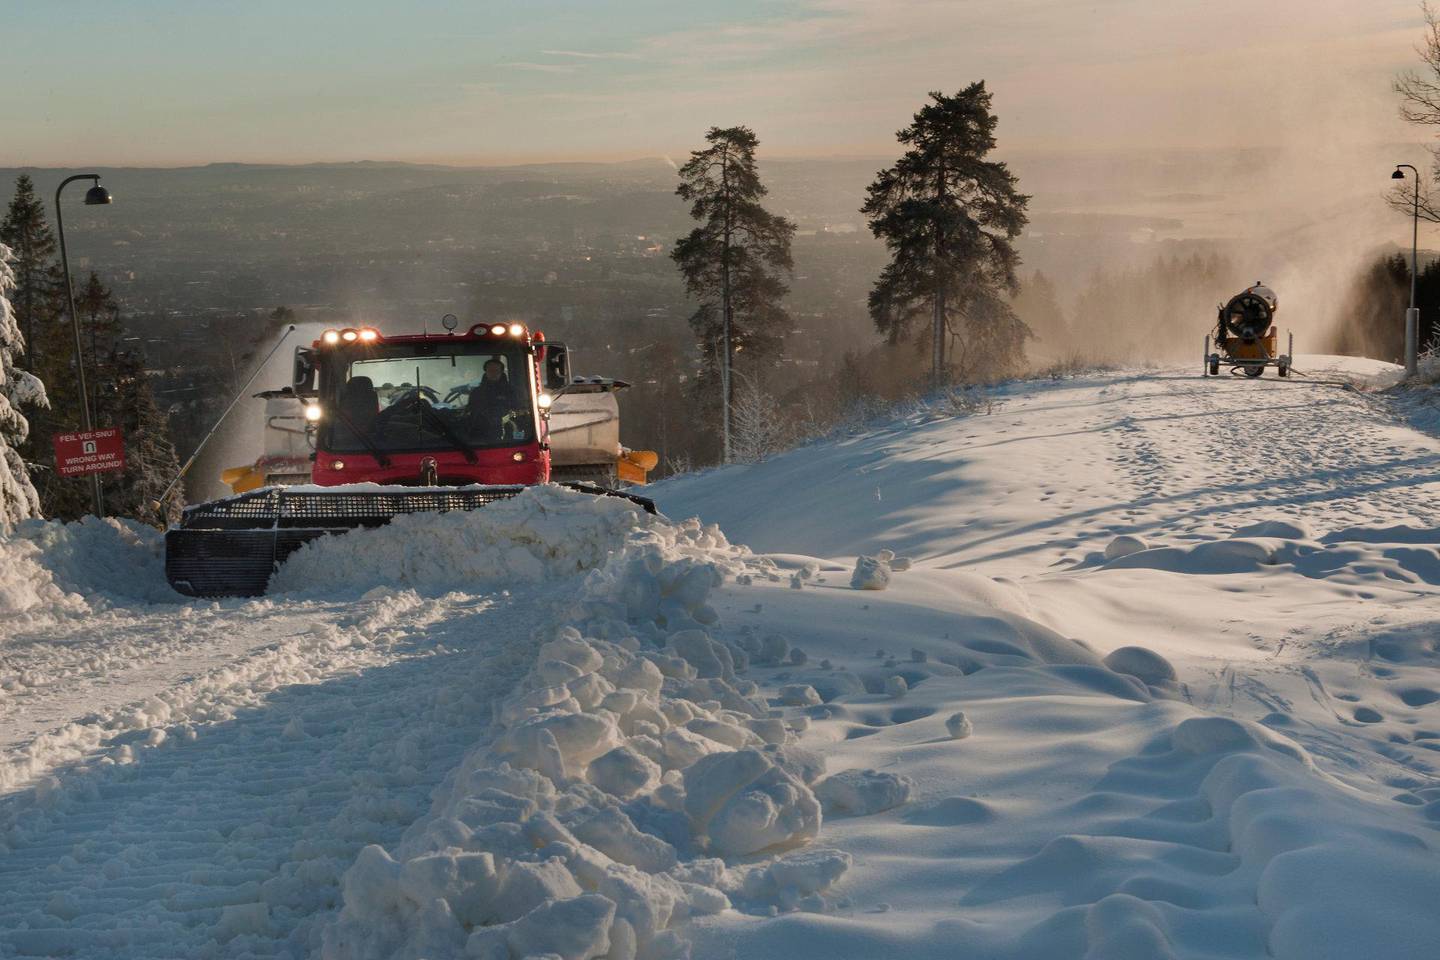 Snørikt: Totalt skal det produseres ca. 40 000 til 45 000 kubikkmeter med snø til bruk i Oslos skianlegg gjennom vinteren. Foto: KID